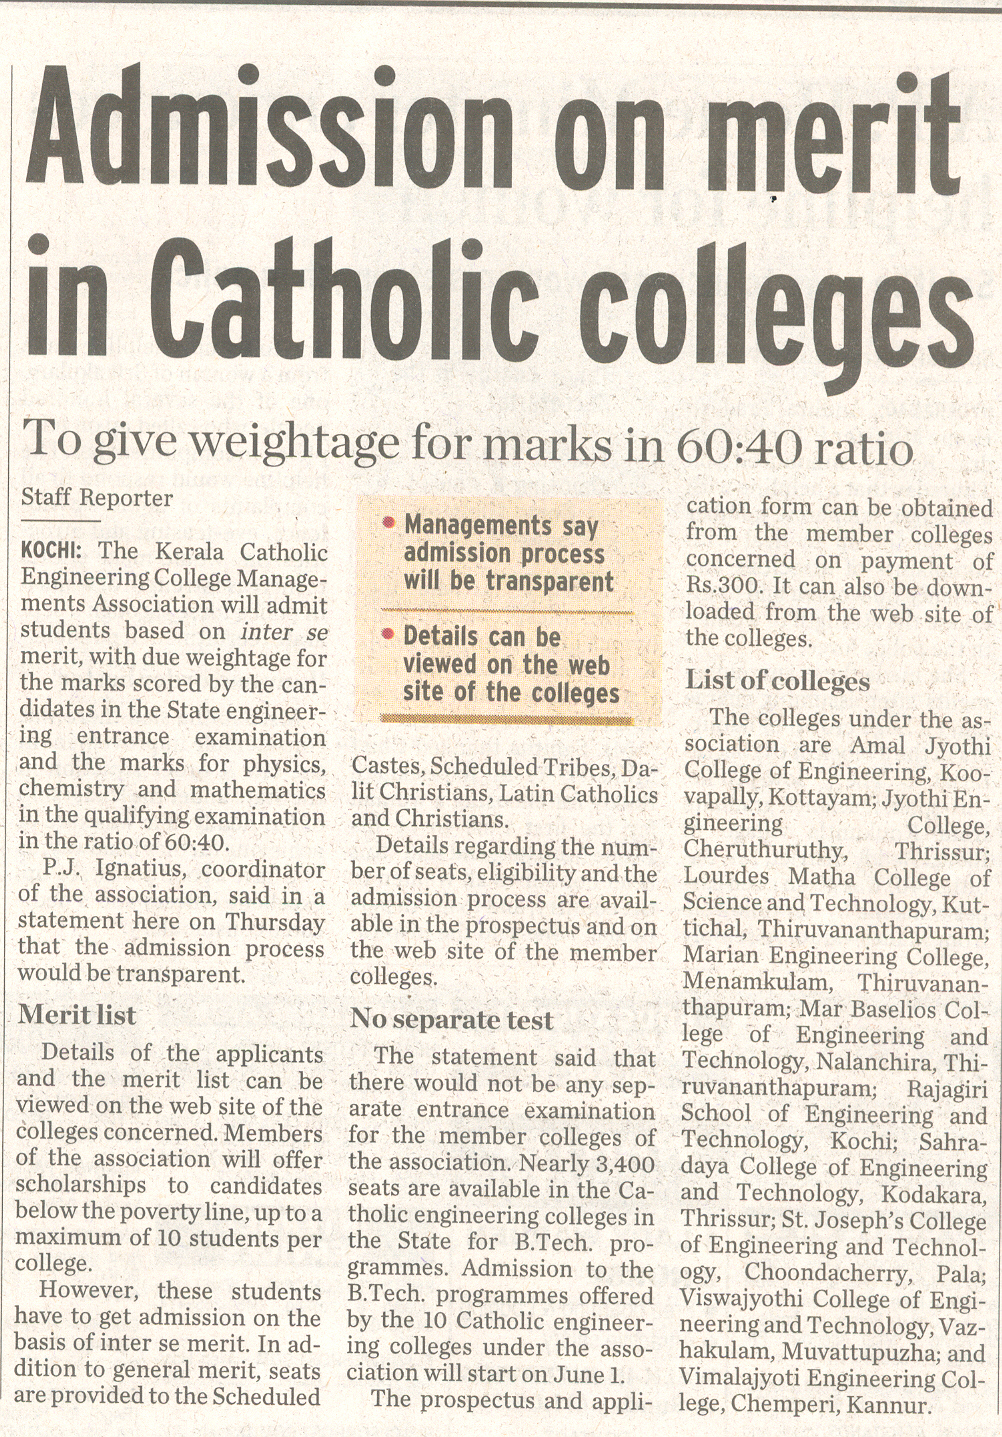 Admission on merit in catholic colleges